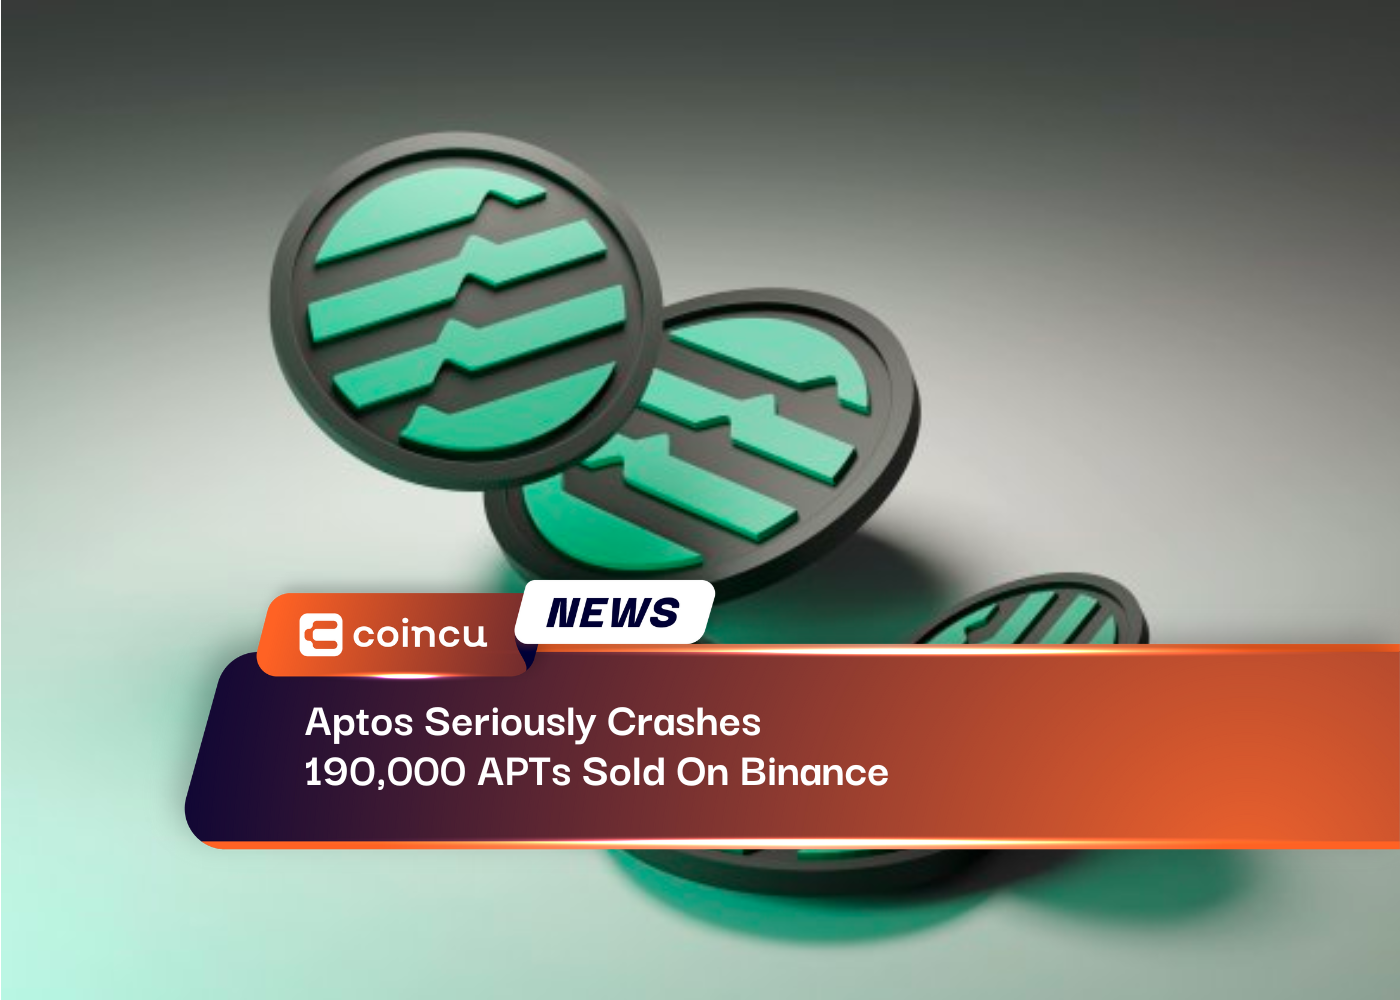 Aptos làm hỏng nghiêm trọng 190,000 APT được bán trên Binance